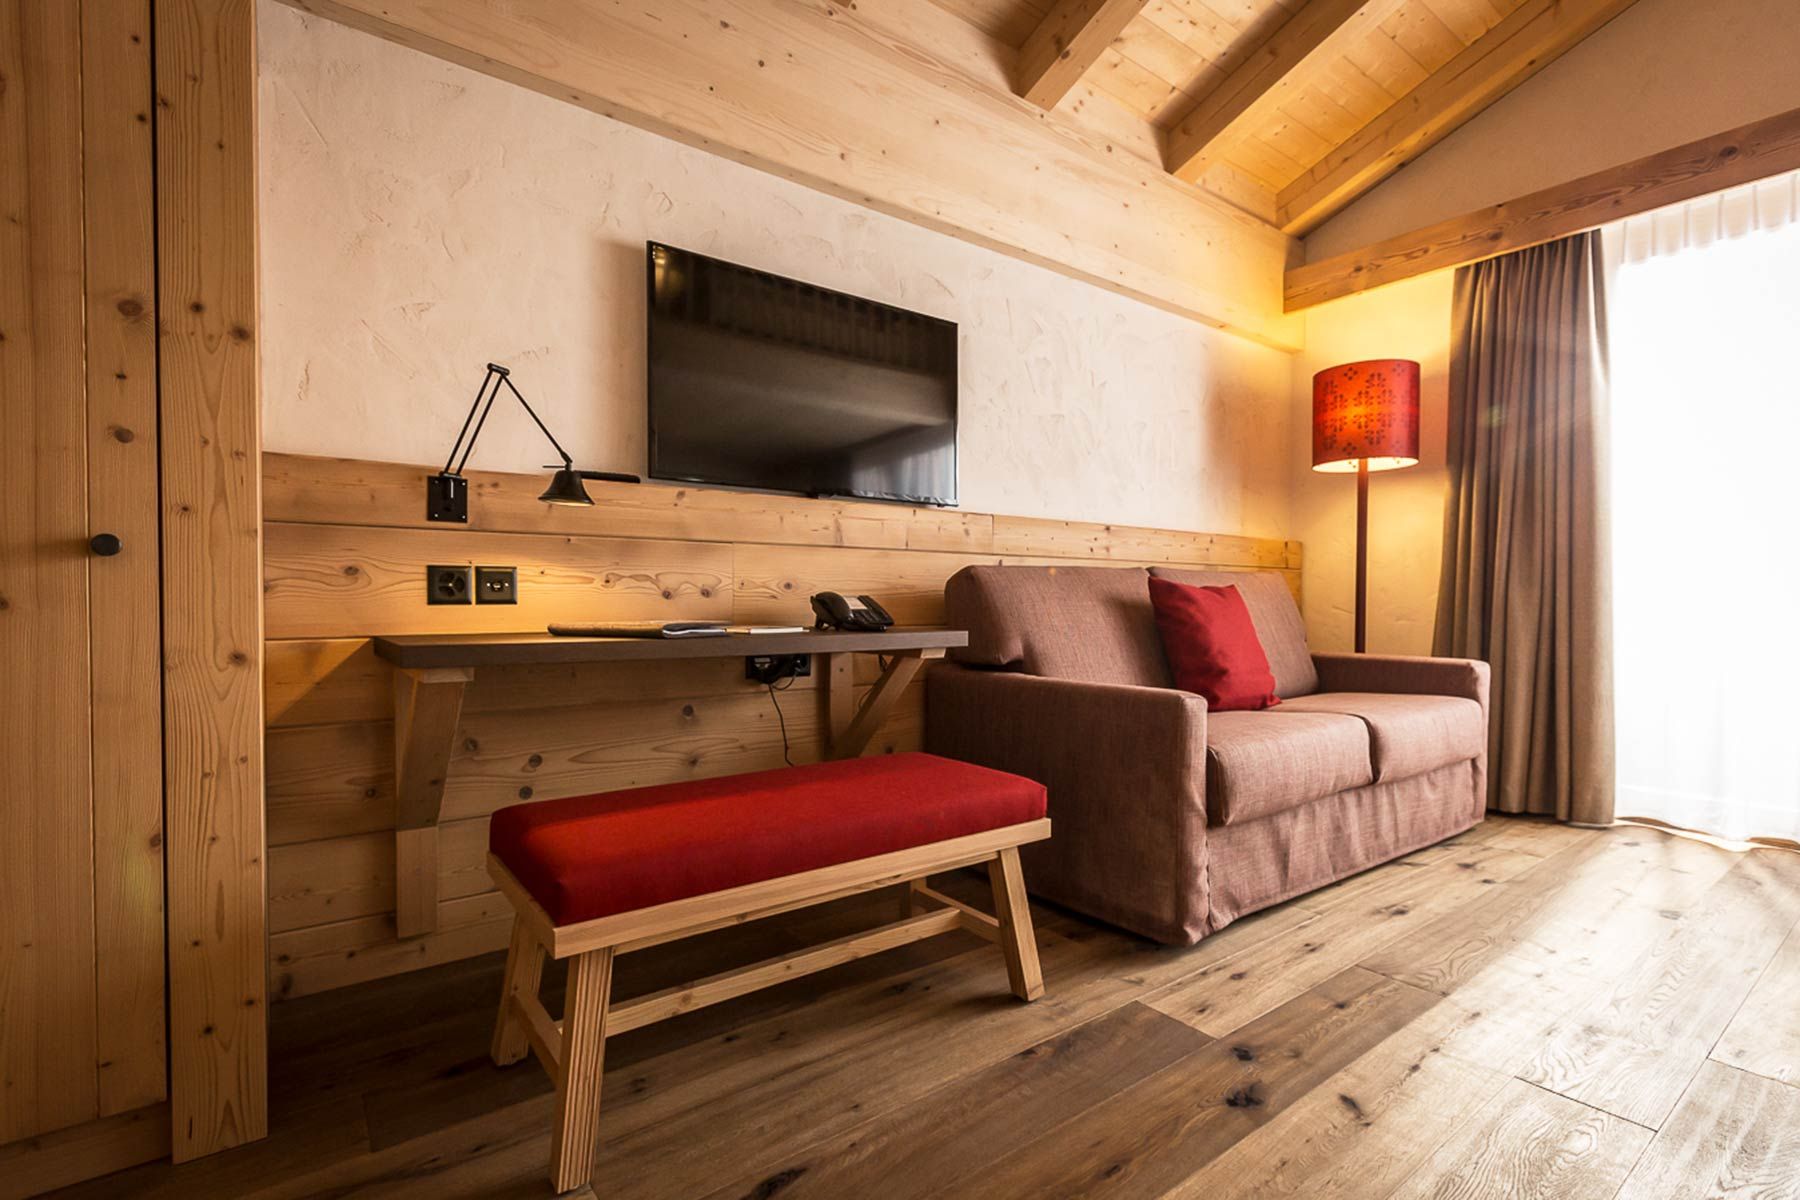 Einrichtung die zum Hotelcharakter passt mit Couch, Holzhocker und Lampen